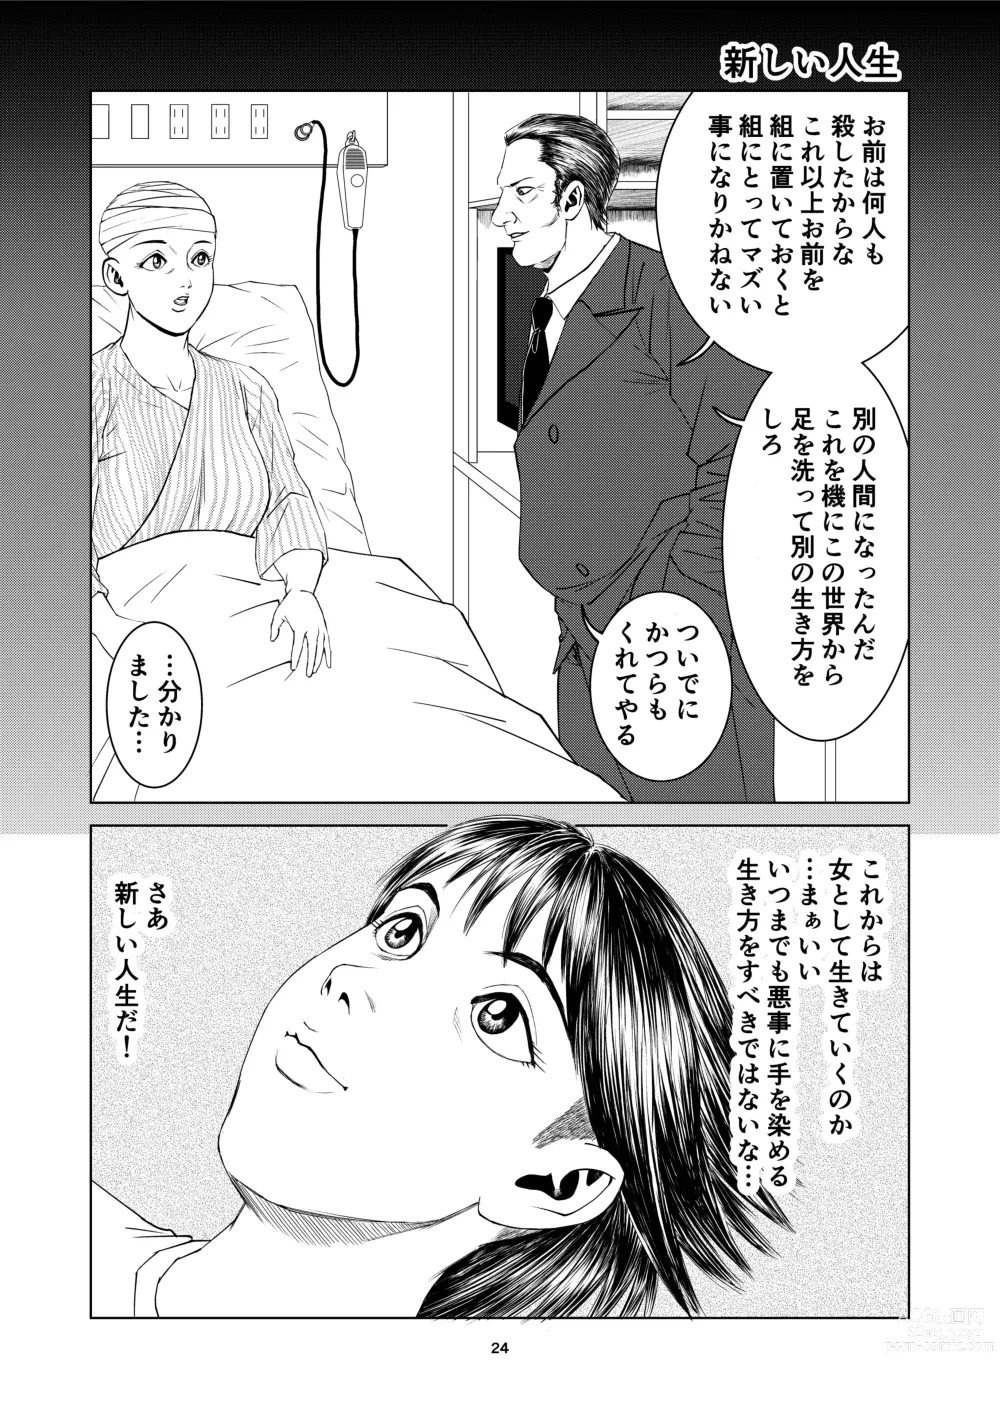 Page 24 of doujinshi Yutakadou short story collection 2